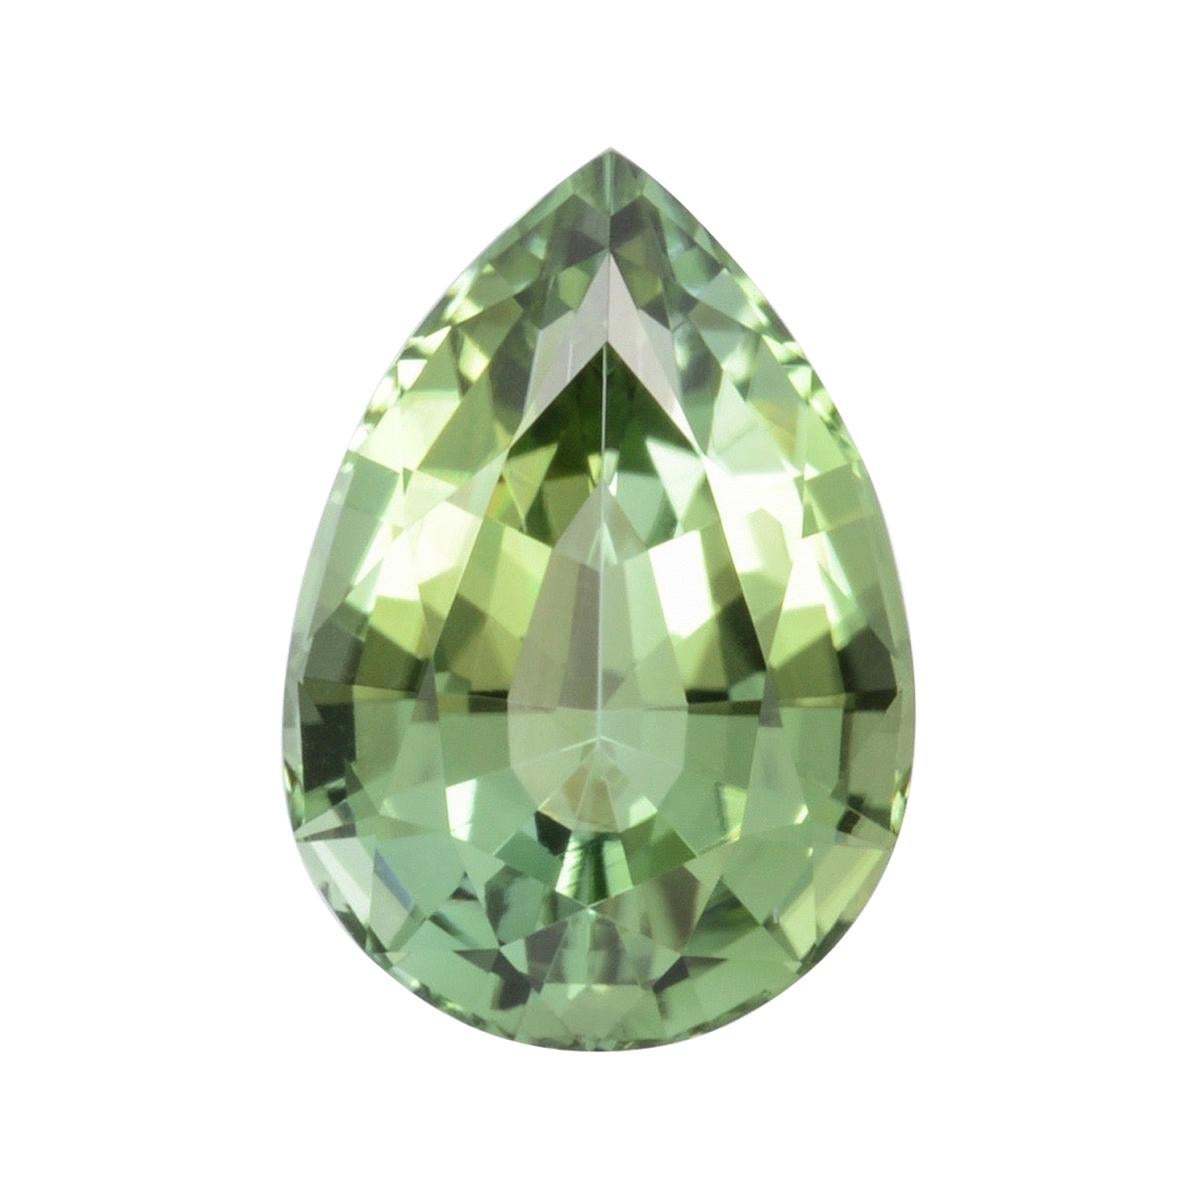 Green Tourmaline Ring Gem 5.09 Carat Unmounted Pear Shape Loose Gemstone